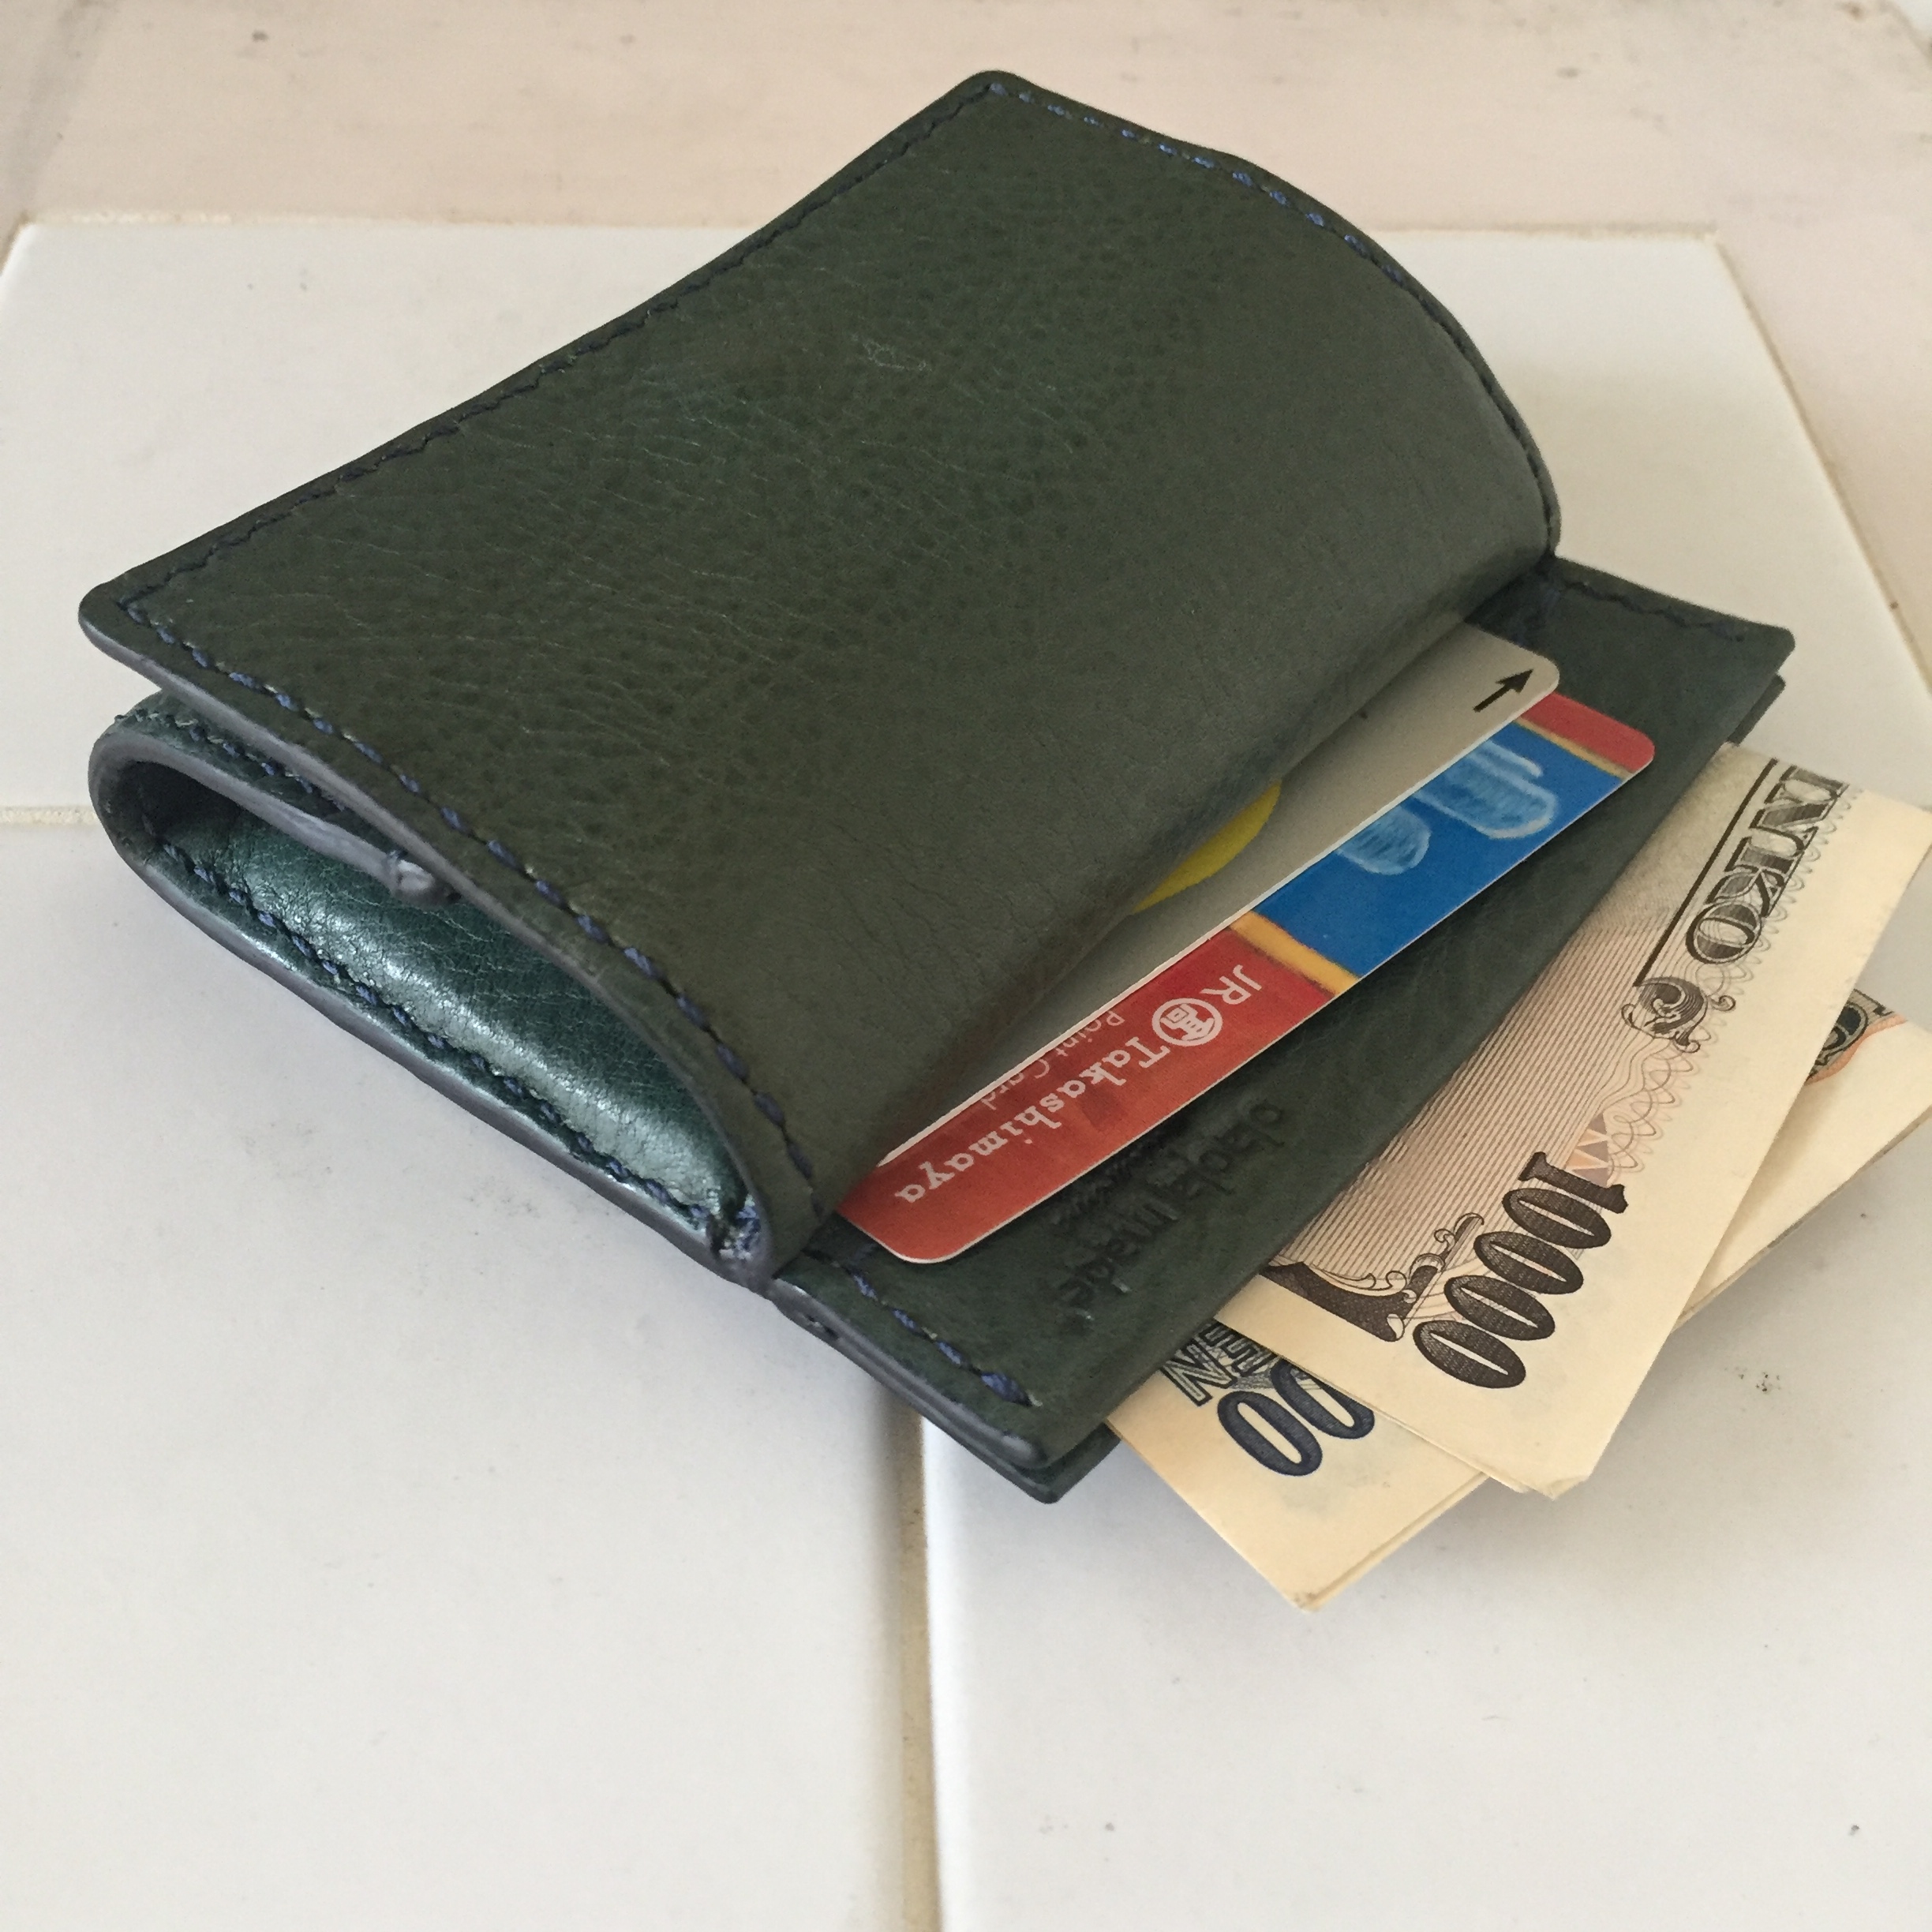 名入れ無料 片手サイズ カード お札も収納できる ボックスコインケース イタリアレザー 男性の方にも Iichi ハンドメイド クラフト作品 手仕事品の通販